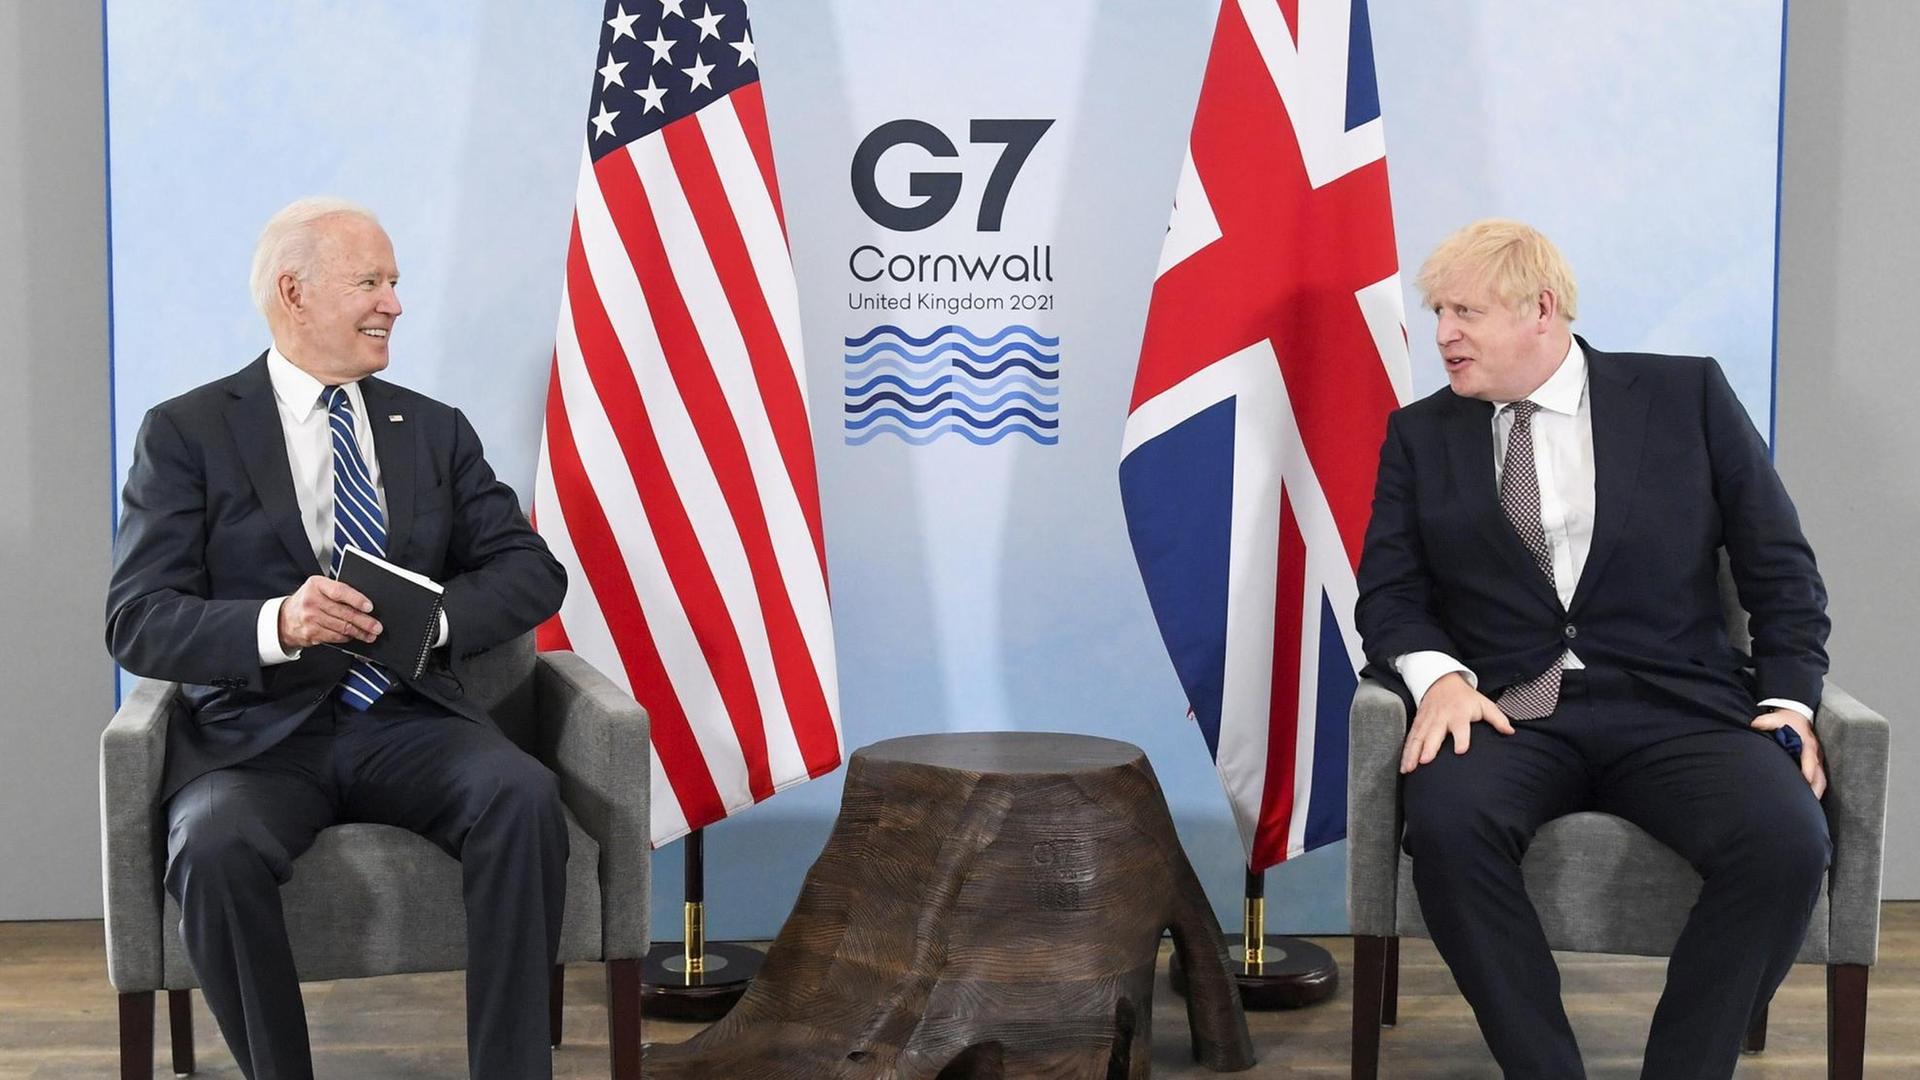 Joe Biden und Boris Johnson sitzen auf zwei Sesseln im Hintergrund das Logo des G7-Gipfels und die Flaggen der USA und Großbritanniens.